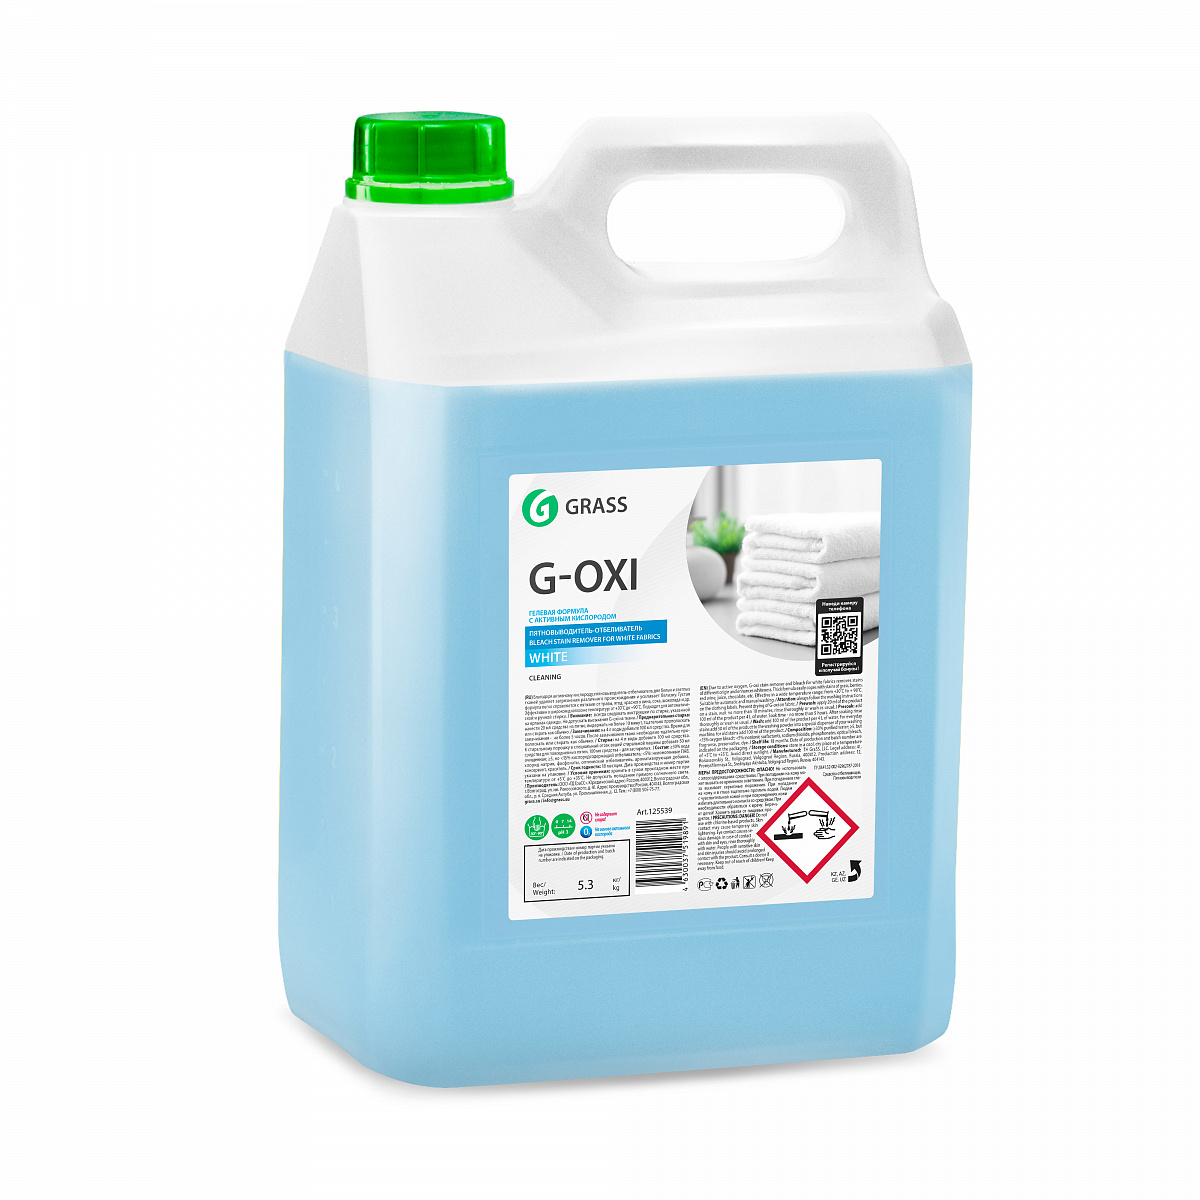 Пятновыводитель-отбеливатель Grass G-Oxi для белых вещей с активным кислородом (5,3 кг) (125539) 